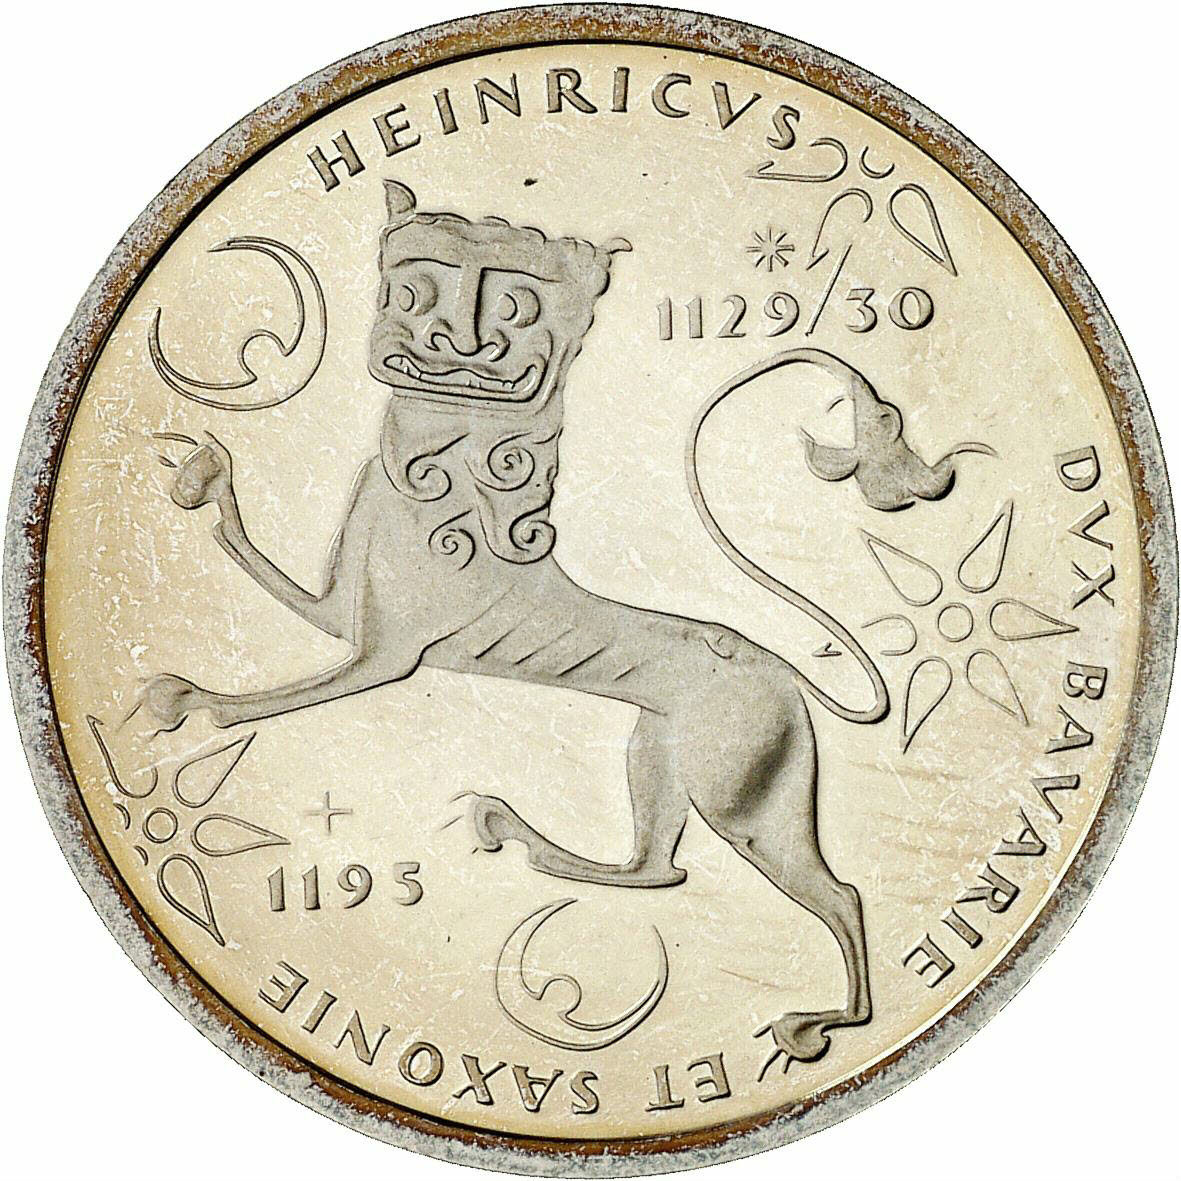 DE 10 Deutsche Mark 1995 F